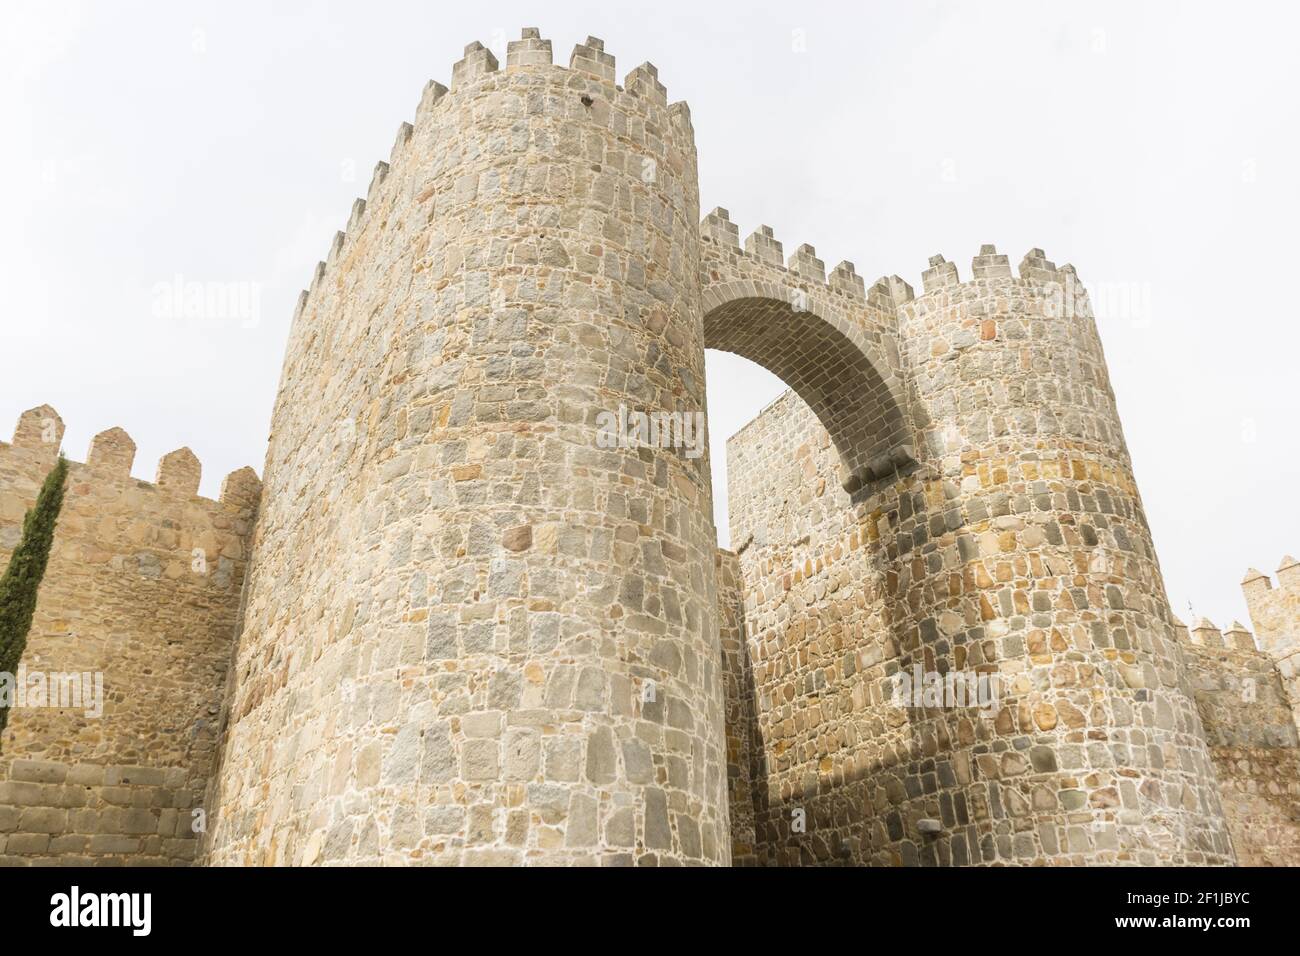 Ritterliche, Mauern der Stadt Avila in Castilla y LeÃ³n, Spanien. Befestigte mittelalterliche Stadt Stockfoto